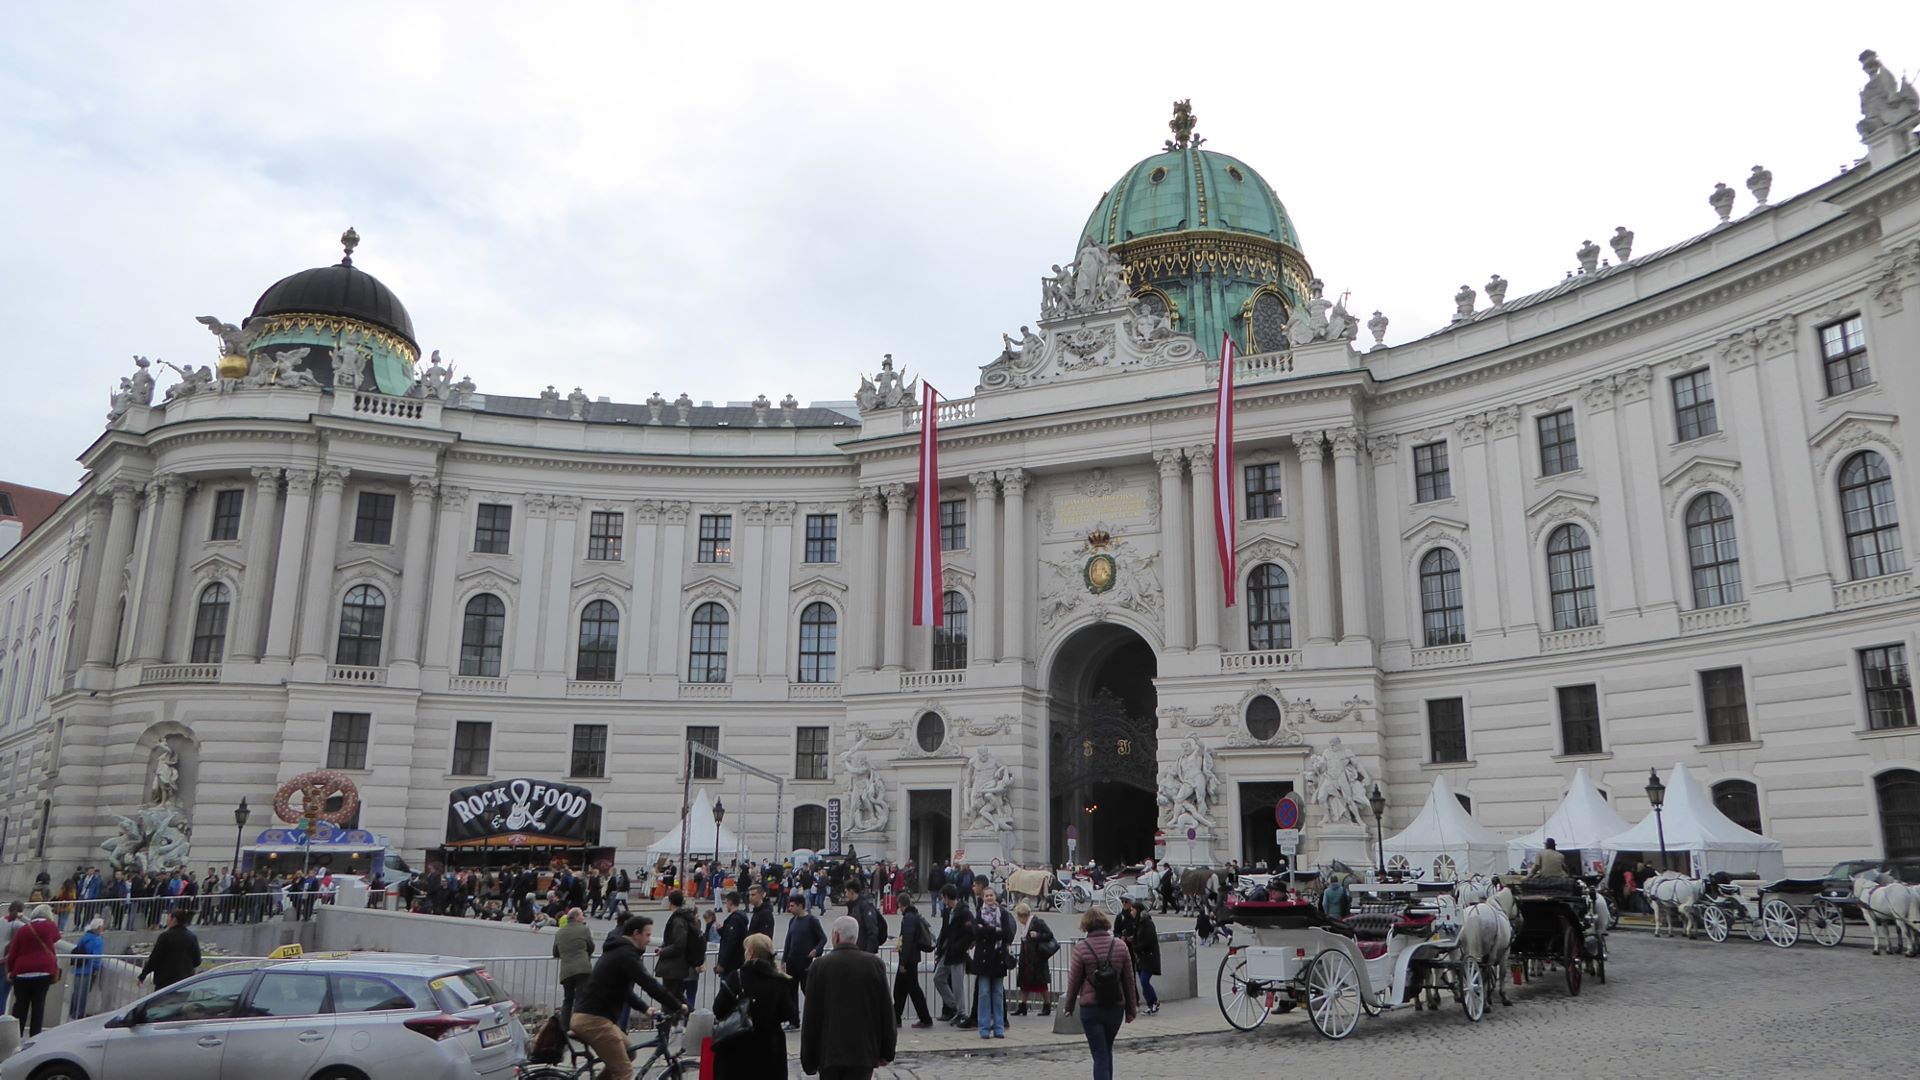 Wien, Hofburg